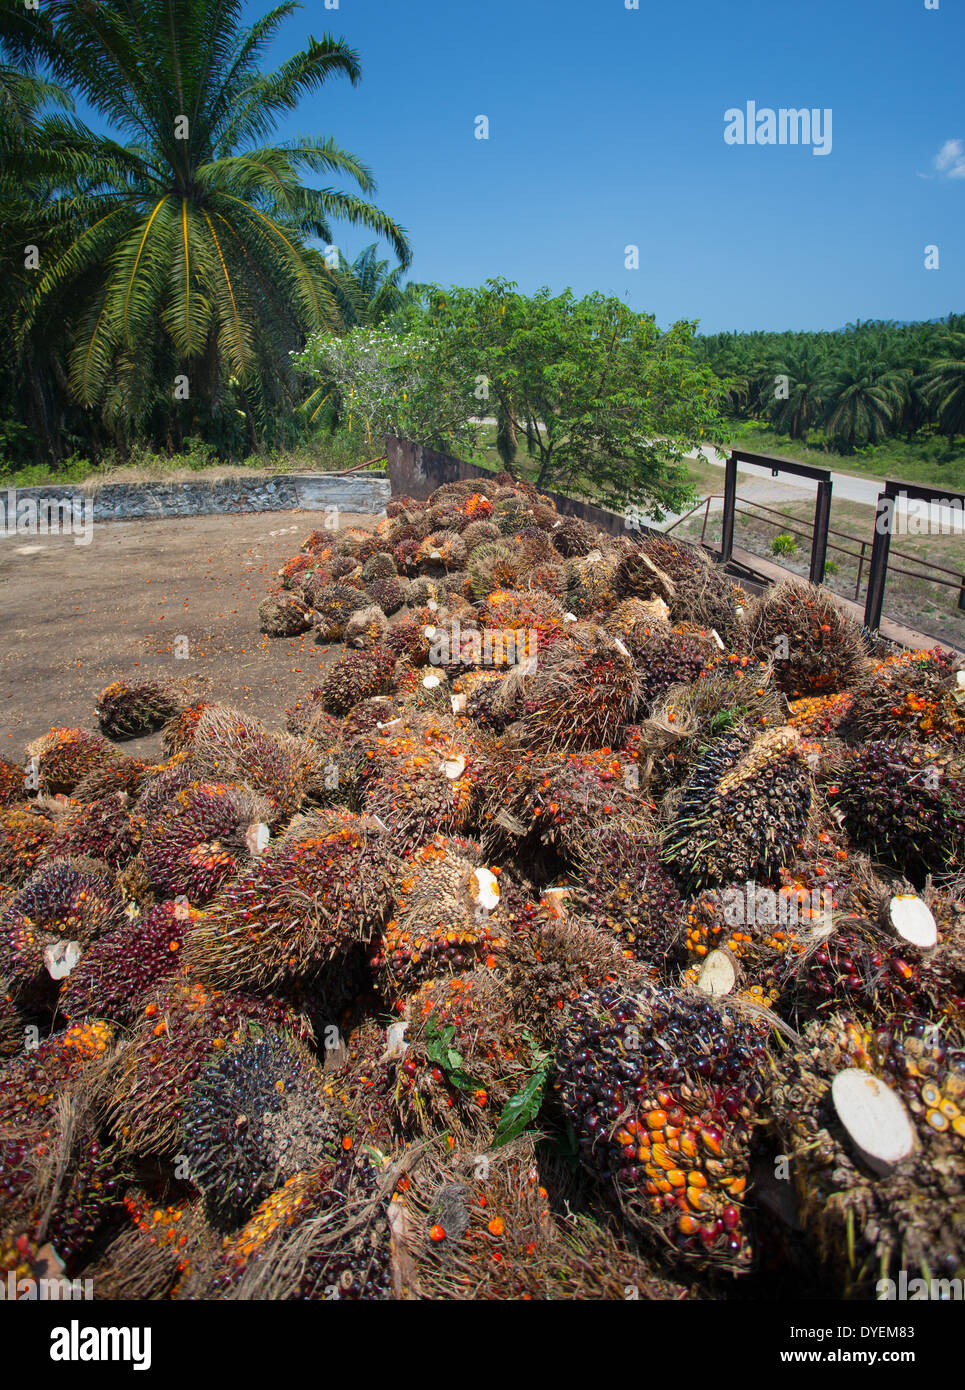 Los frutos rojos de la palma de aceite (Elaeis guineensis) recogidos para su procesamiento y refinamiento en el aceite de palma, Pahang, Malasia Foto de stock